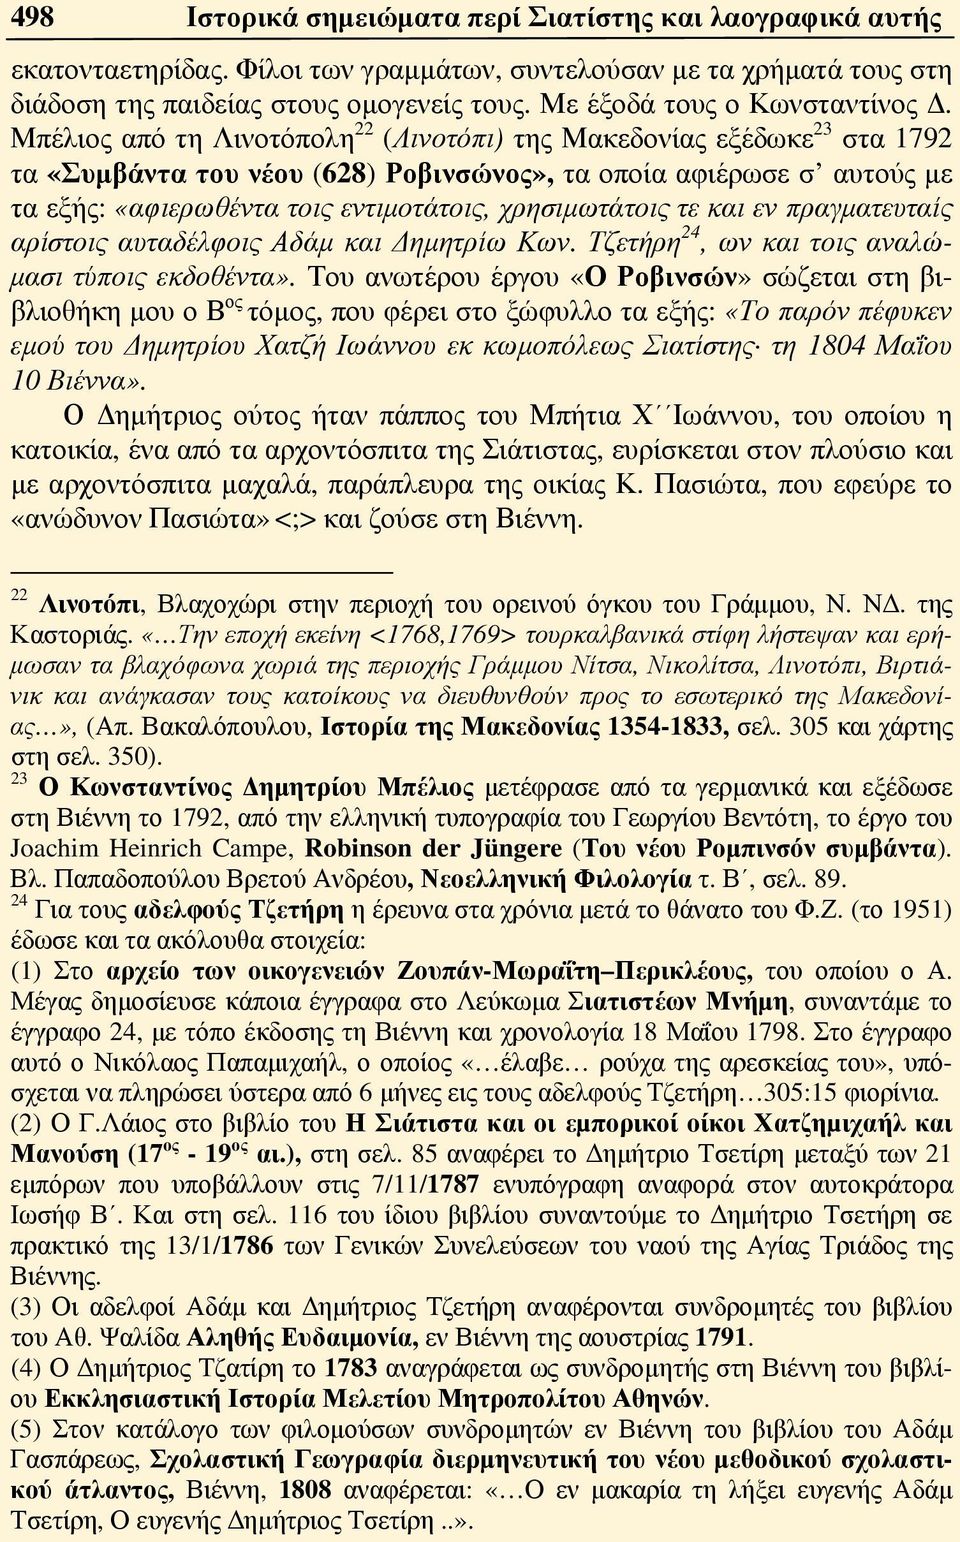 Μπέλιος από τη Λινοτόπολη 22 (Λινοτόπι) της Μακεδονίας εξέδωκε 23 στα 1792 τα «Συμβάντα του νέου (628) Ροβινσώνος», τα οποία αφιέρωσε σ αυτούς με τα εξής: «αφιερωθέντα τοις εντιμοτάτοις,